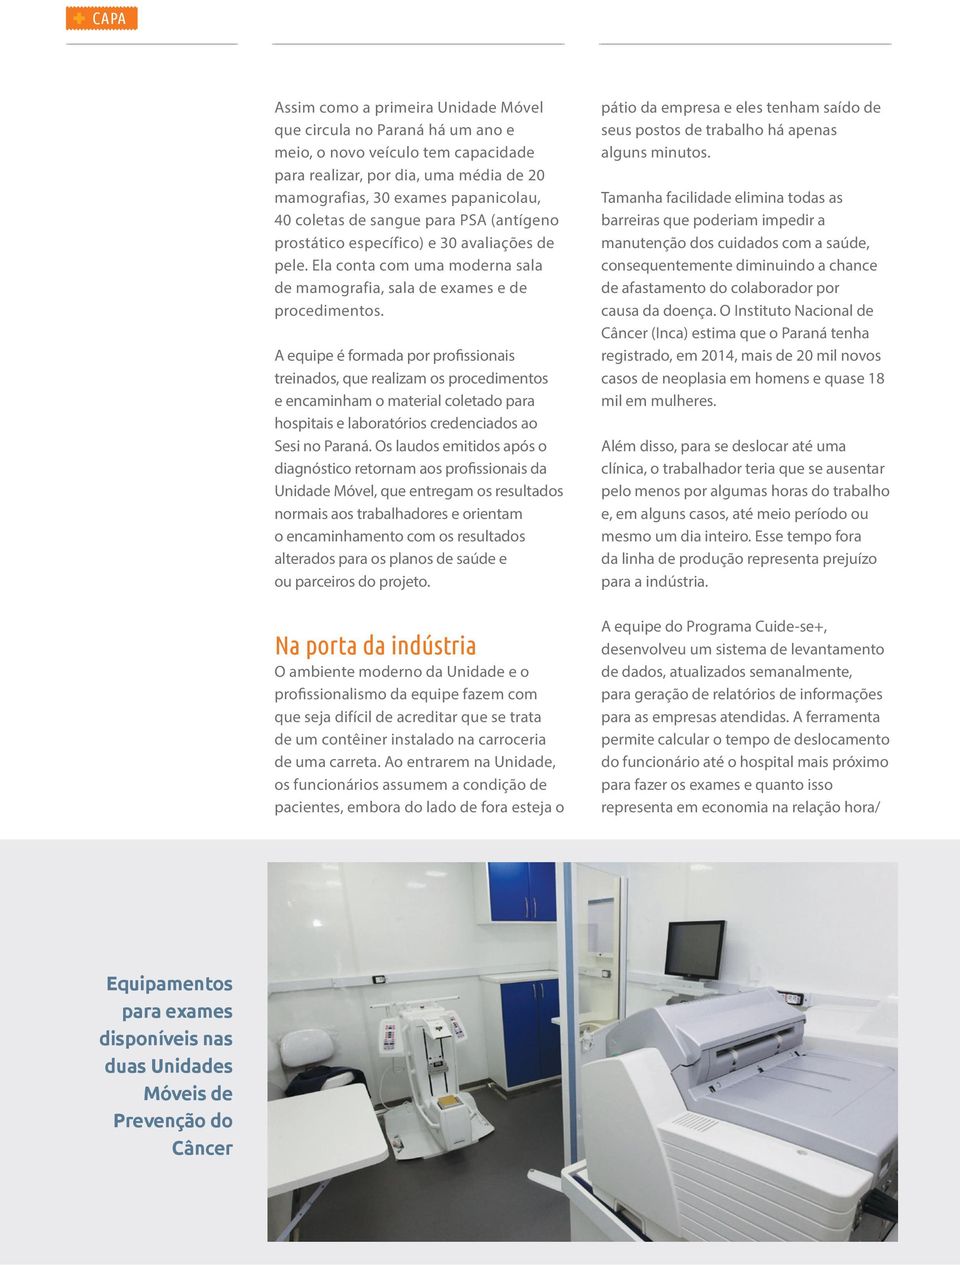 A equipe é formada por profissionais treinados, que realizam os procedimentos e encaminham o material coletado para hospitais e laboratórios credenciados ao Sesi no Paraná.